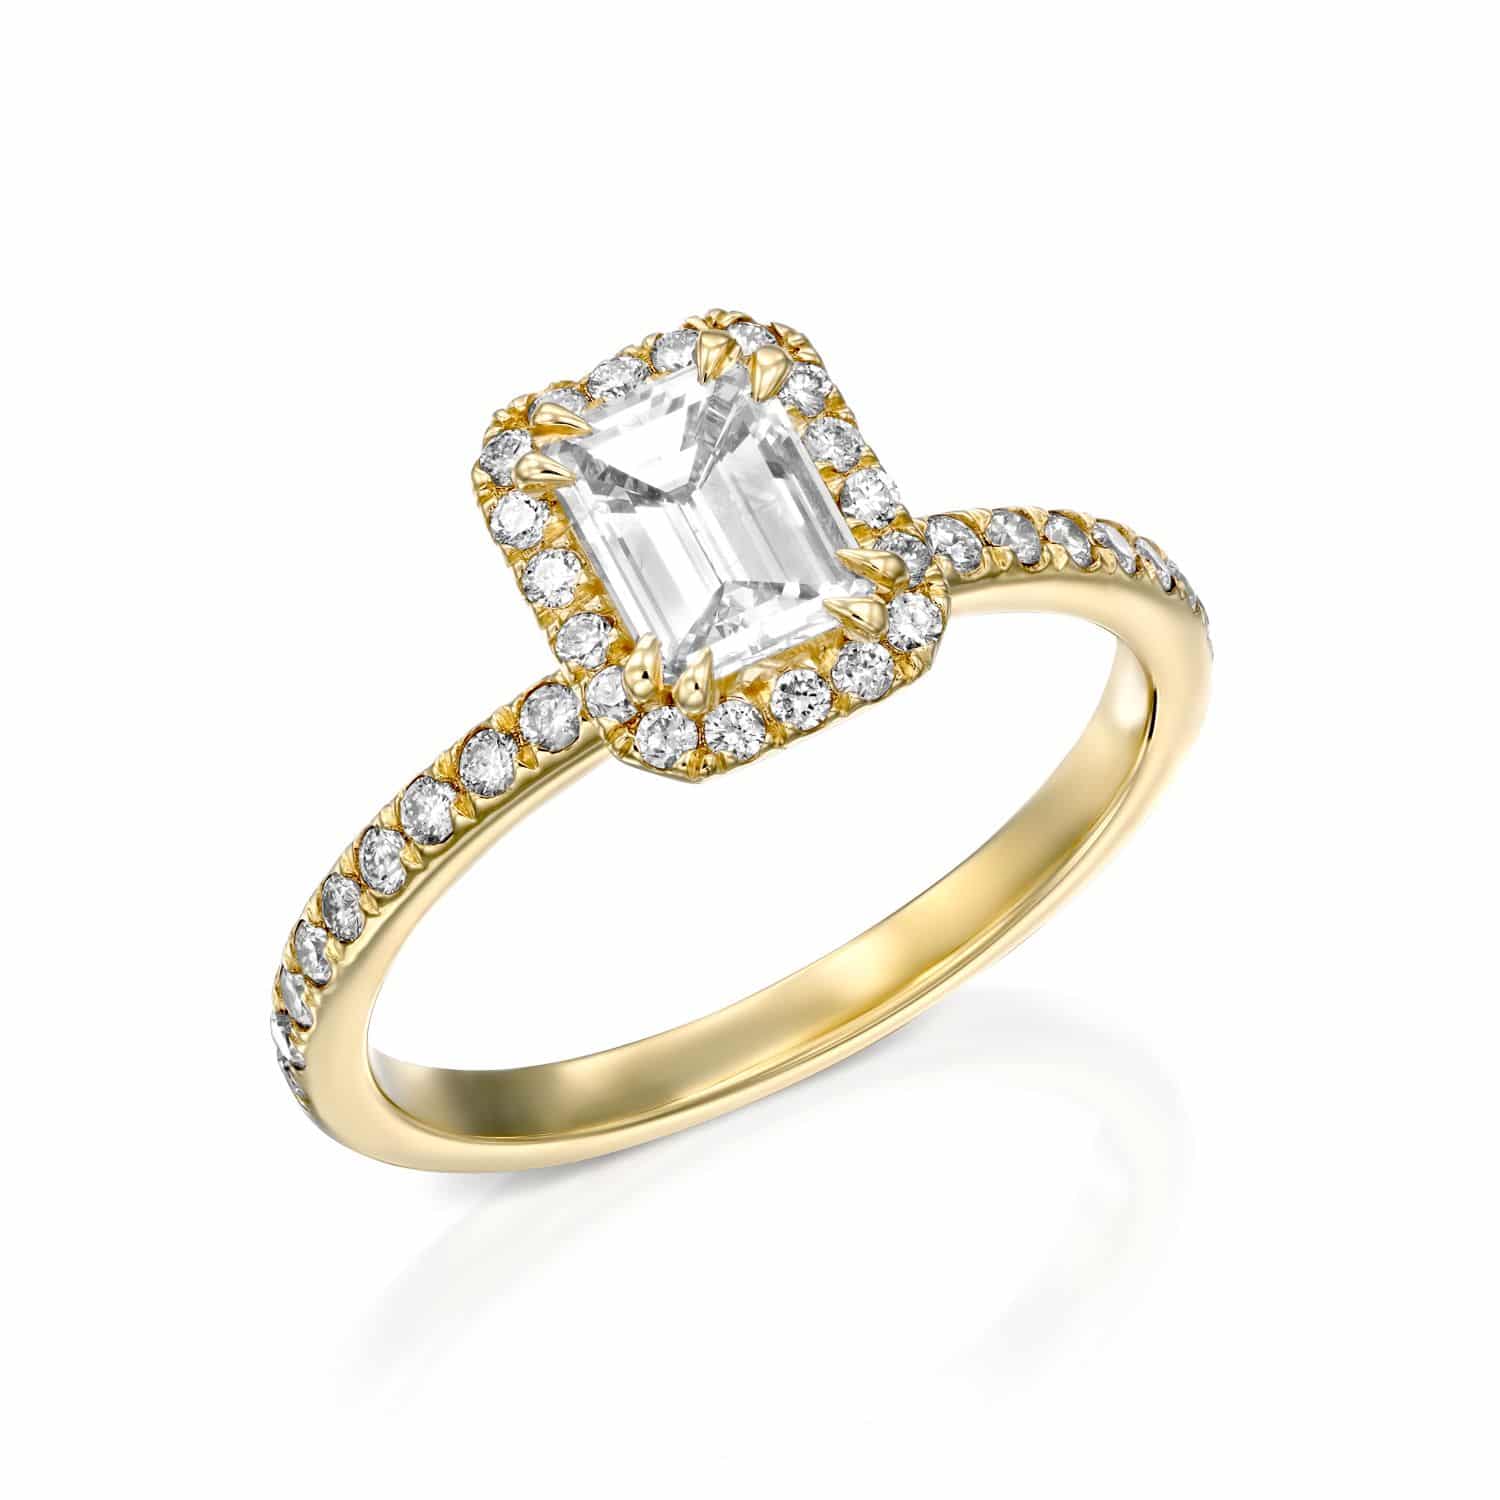 טבעת זהב אלגנטית מעוטרת ביהלום מרכזי בחיתוך אמרלד קורן והילה של יהלומים עגולים נוצצים.